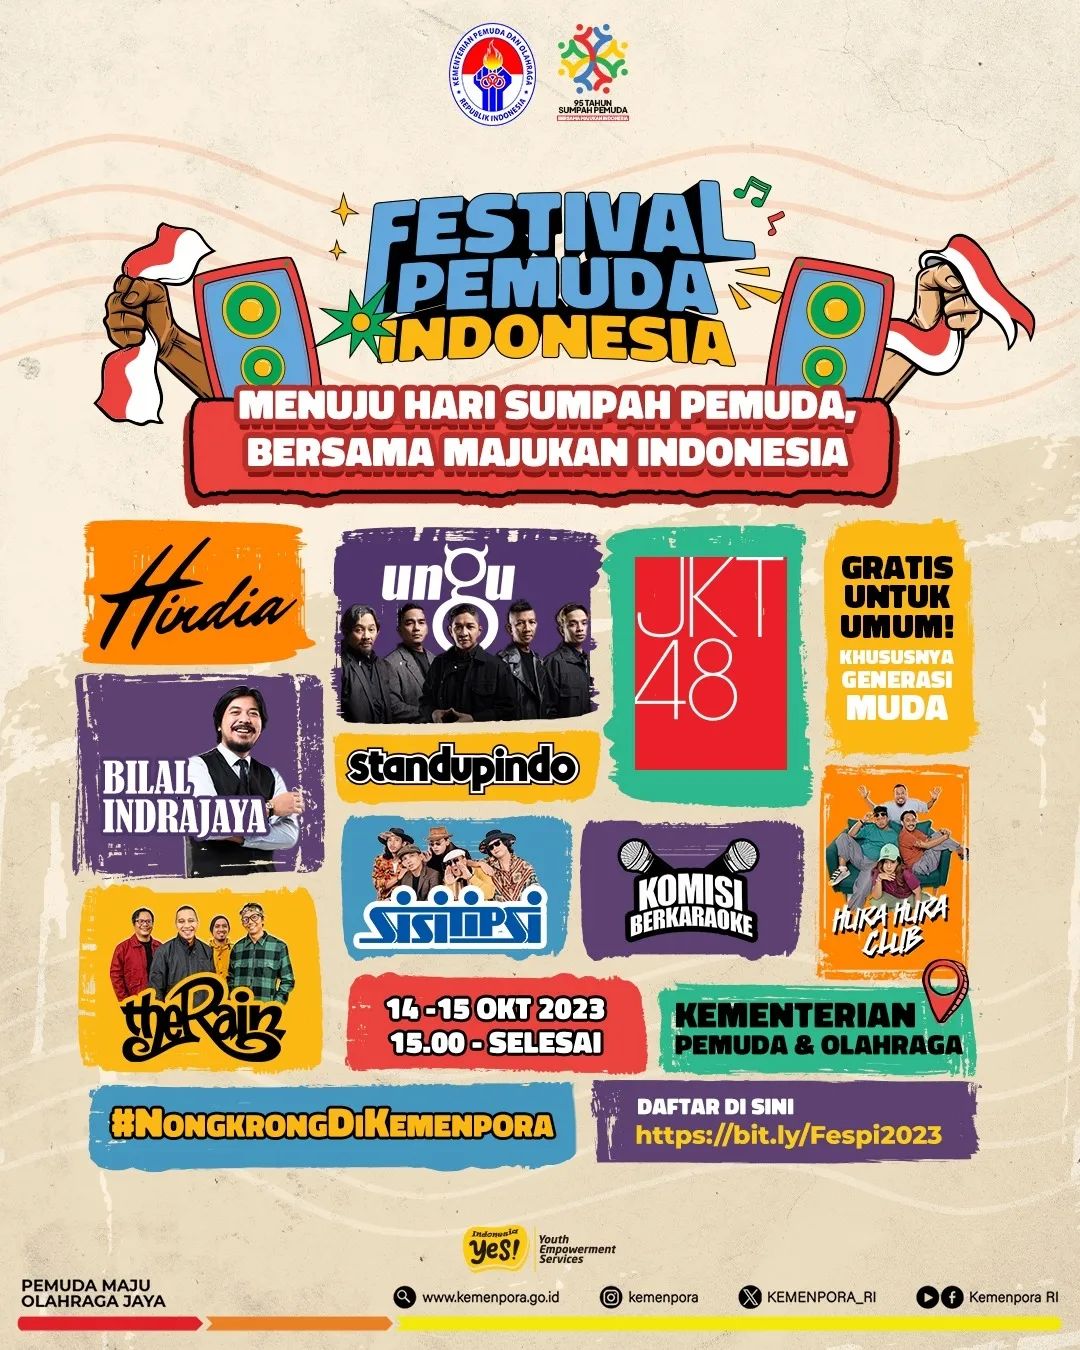 Line Up dan Jadwal Festival Pemuda Indonesia 2023, Menghadirkan JKT48 Hingga Band Ungu Gratis!